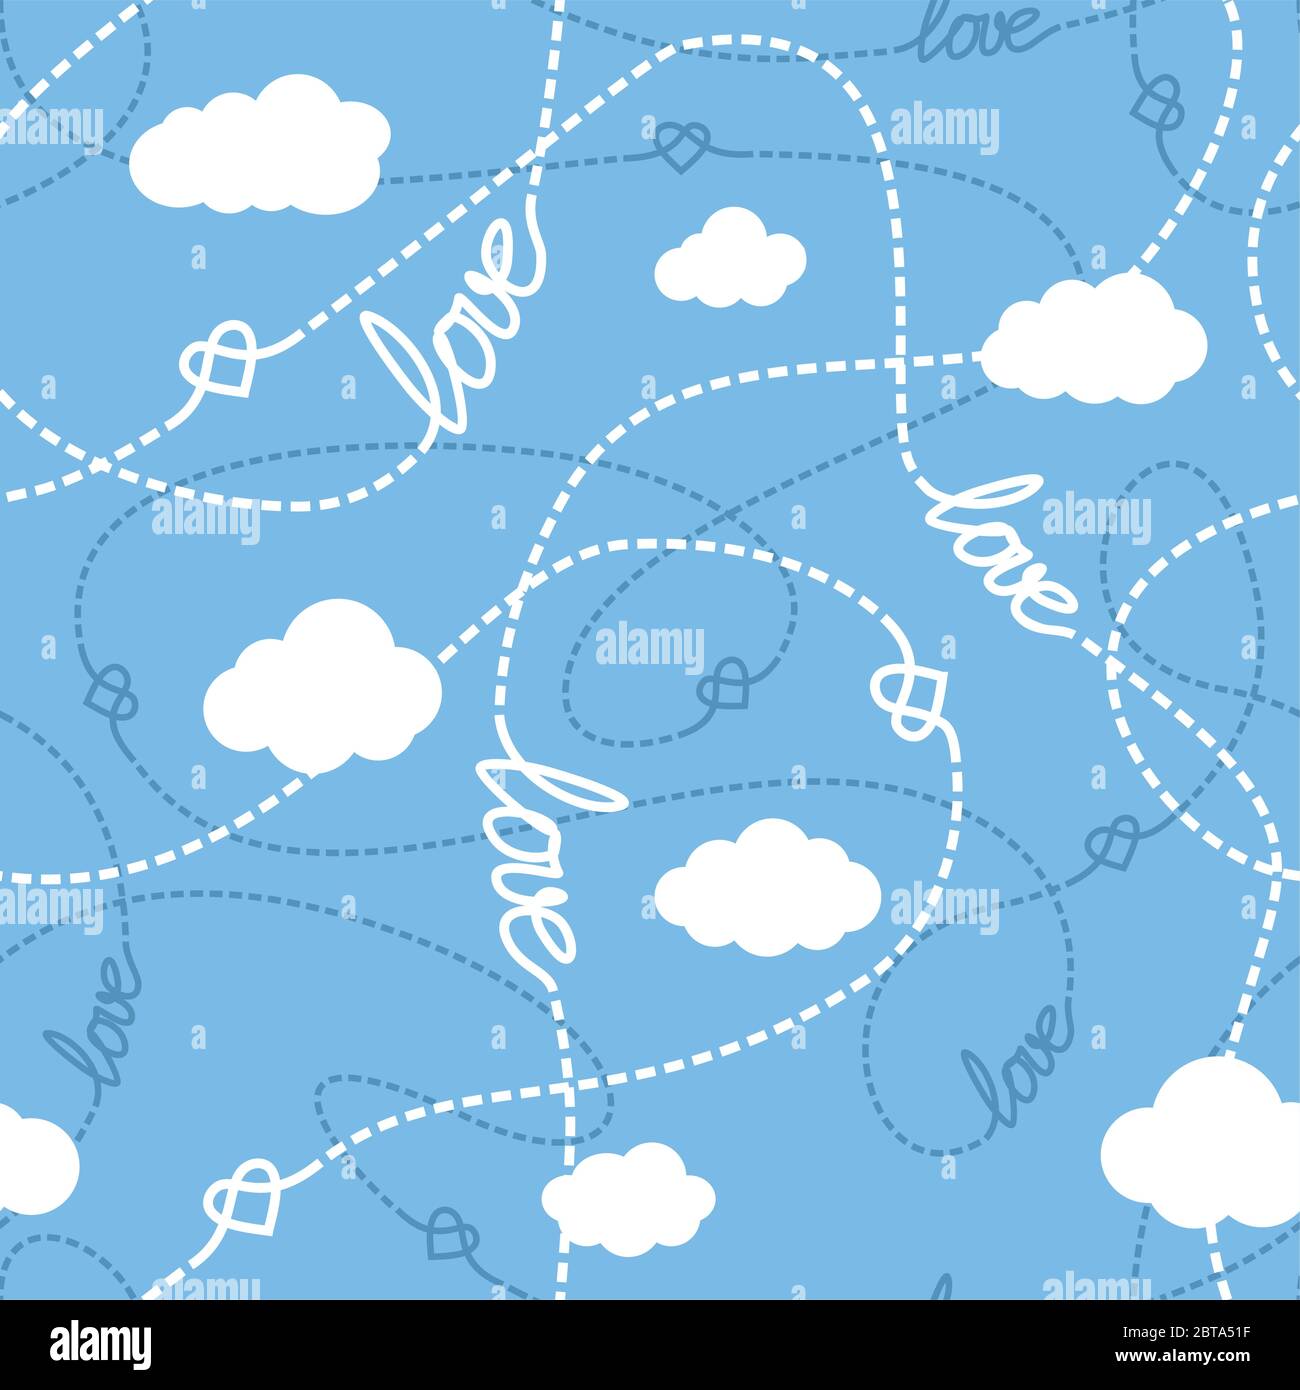 Vektor-Nahtloses Muster mit Liebe Worte, Herzen, verworrene Linien und Wolken. Wiederholende abstrakte Hintergrund für romantisches Design. Liebe konzeptuelle Textur. Stock Vektor